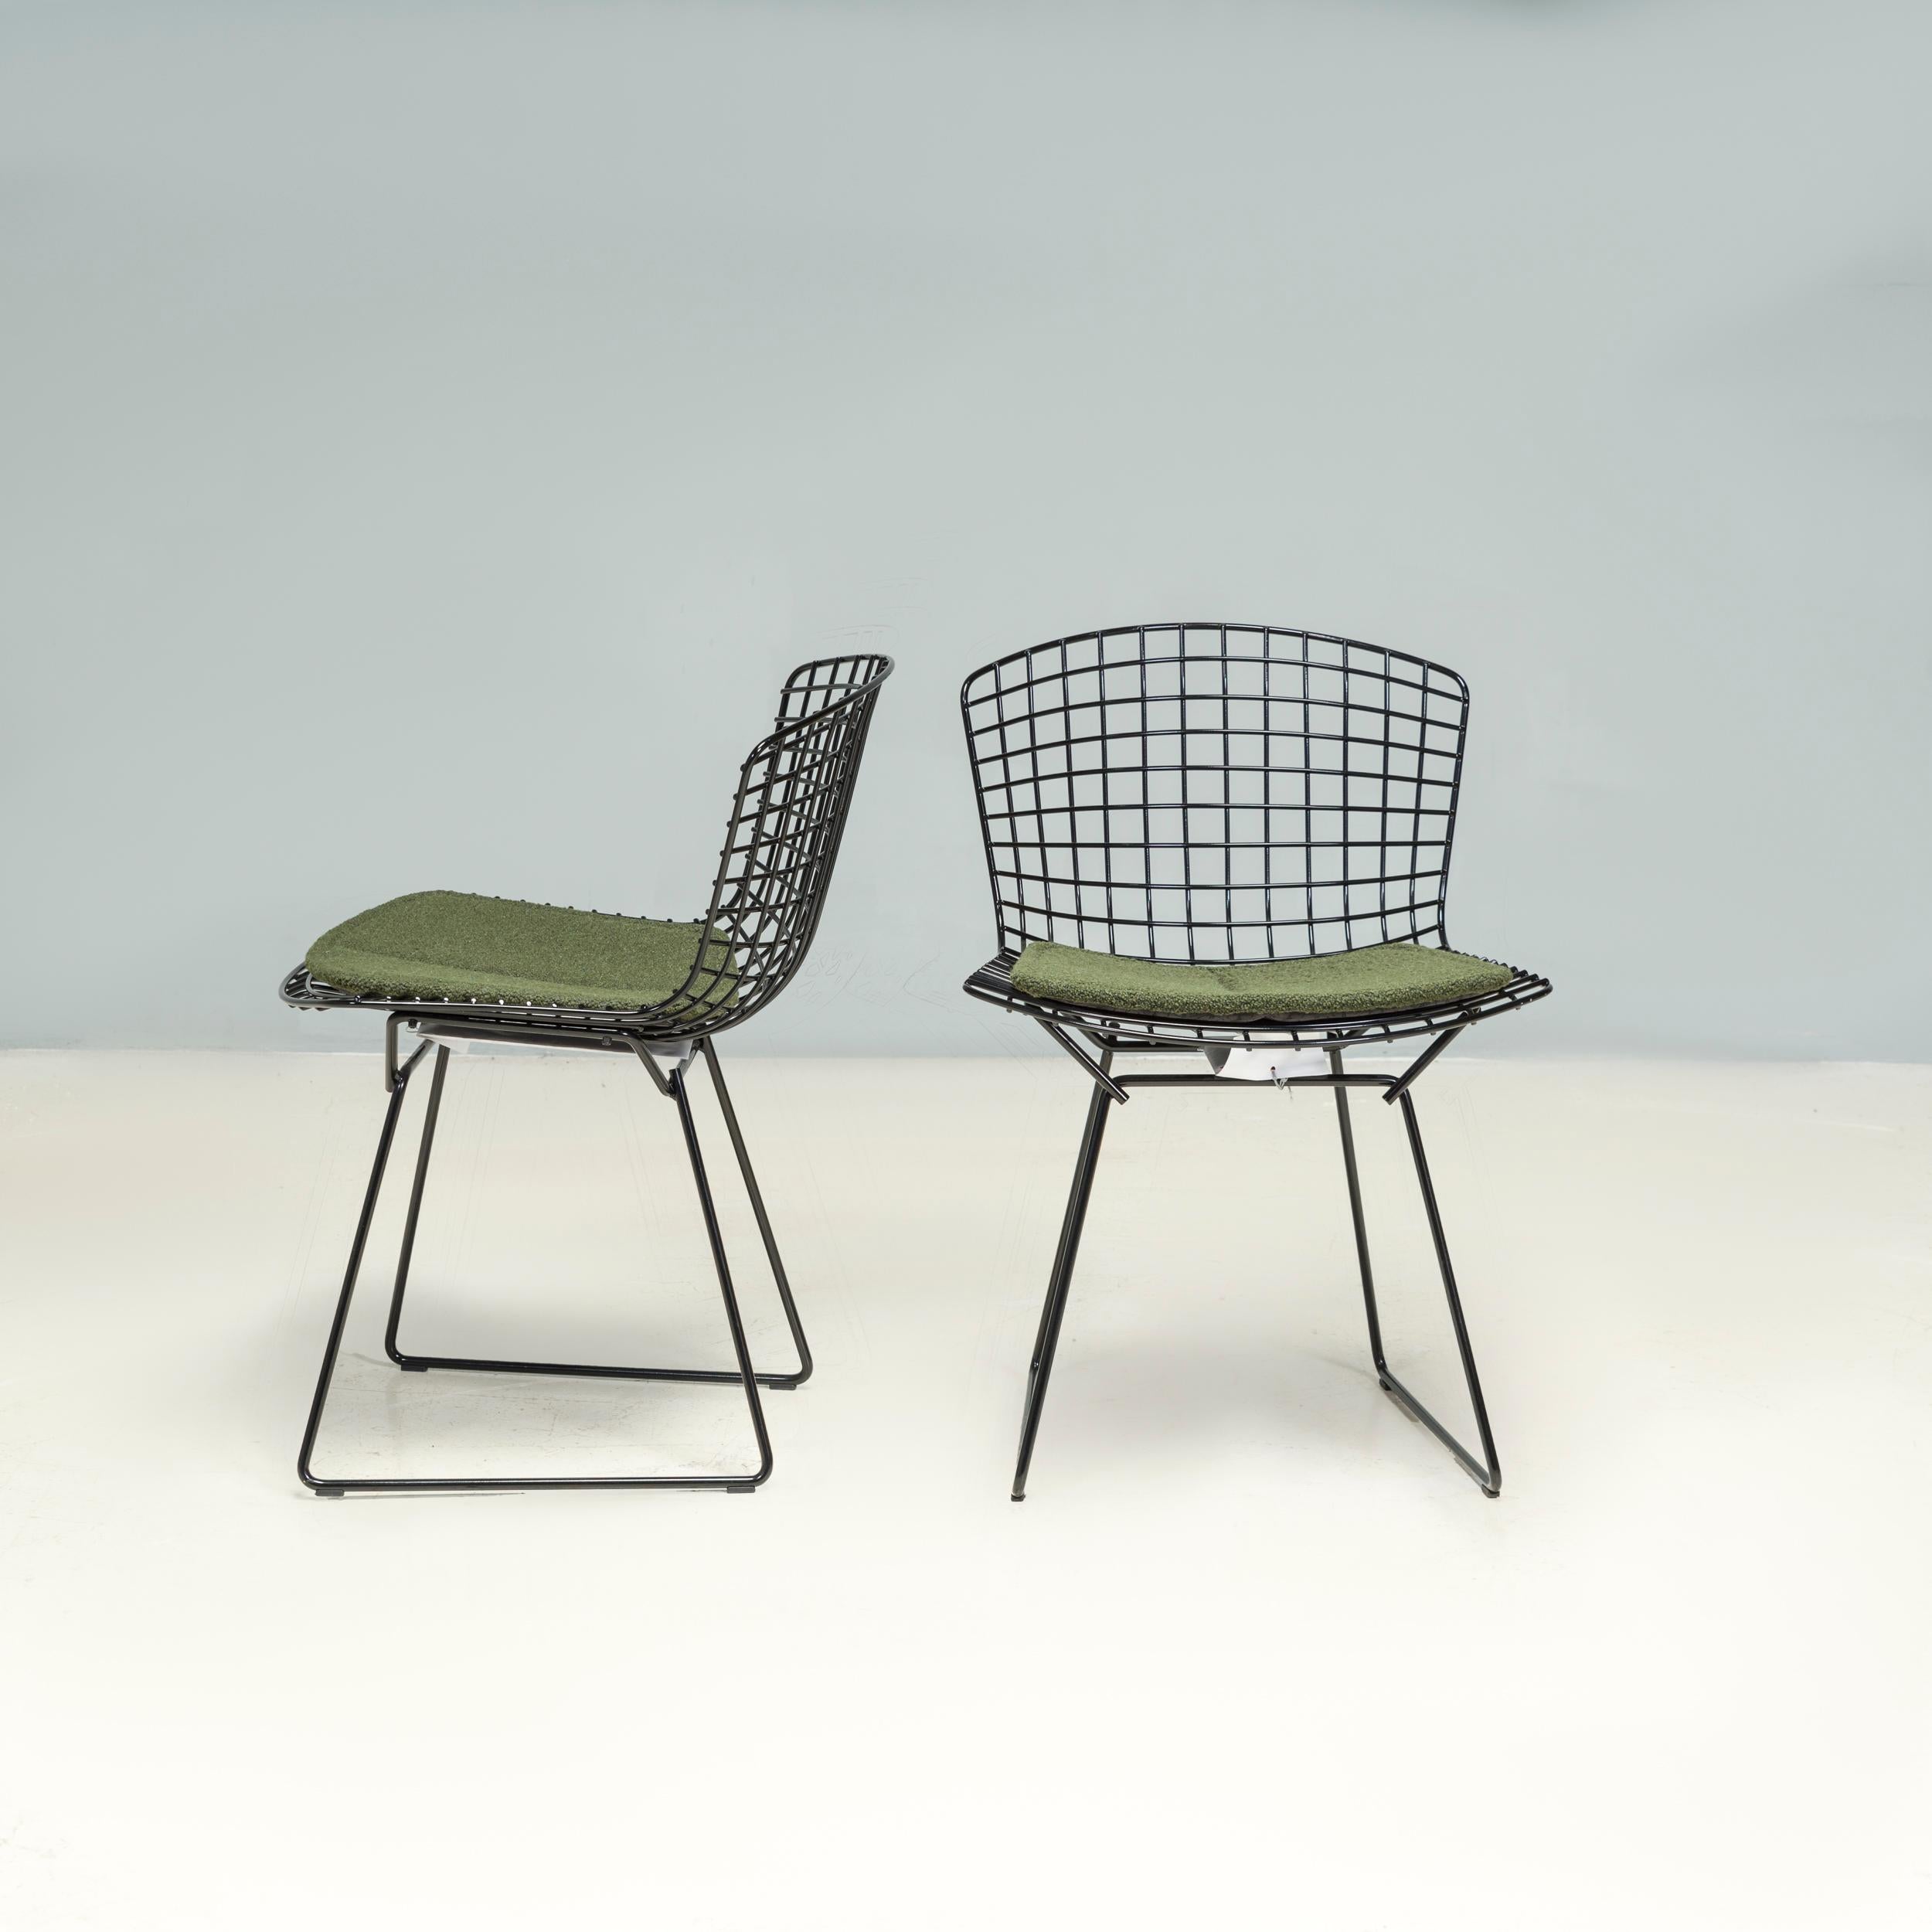 Conçue à l'origine par Harry Bertoia en 1952, sa collection éponyme est restée en production chez Knoll depuis lors, la chaise d'appoint étant devenue l'un des meubles les plus reconnaissables du XXe siècle.

Construite à partir d'une maille d'acier